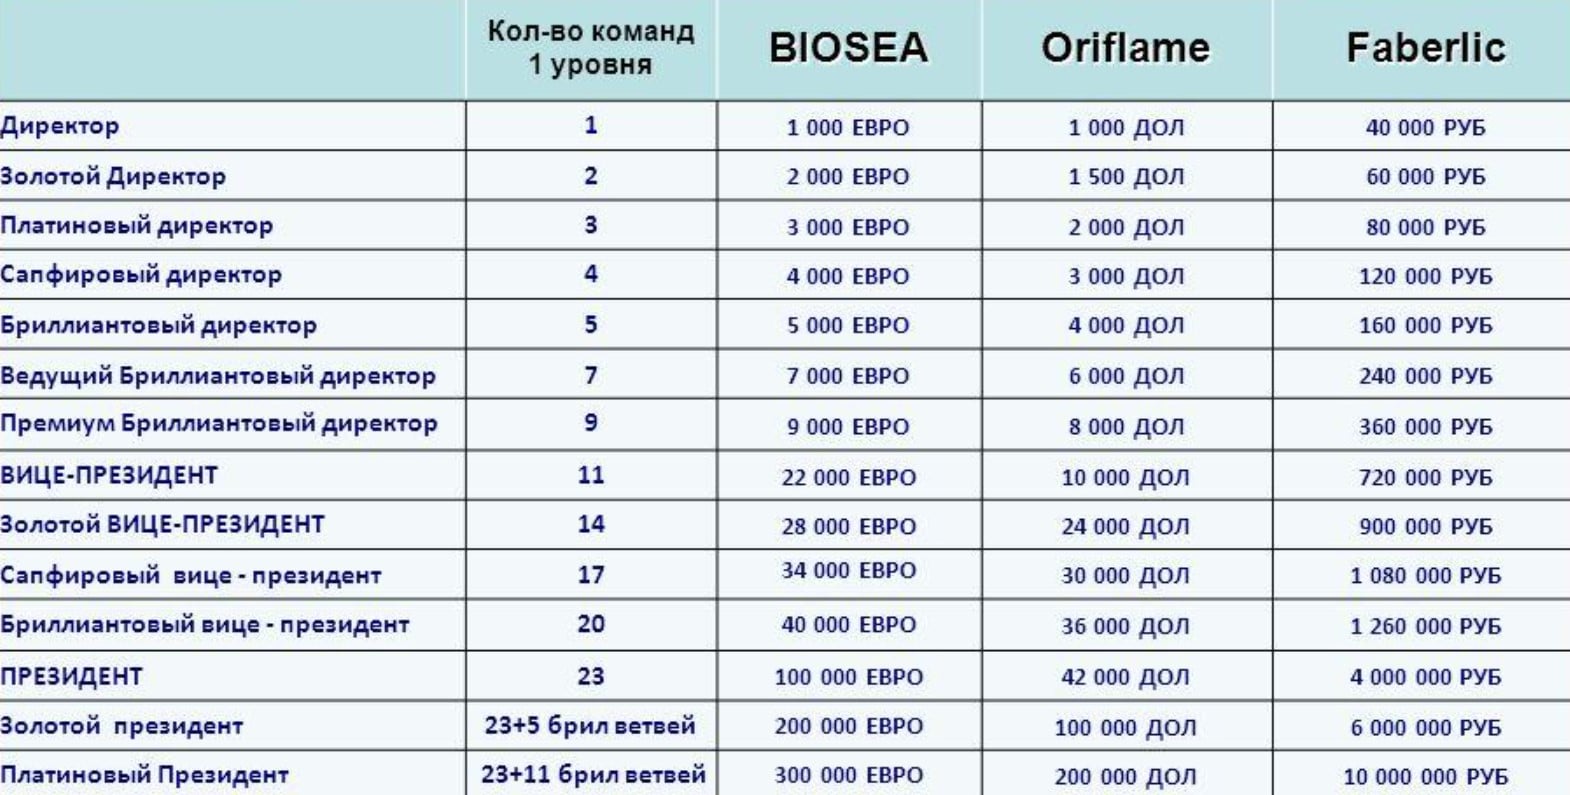 Сравнение маркетинговых планов BIOSEA, Oriflame и Faberlic